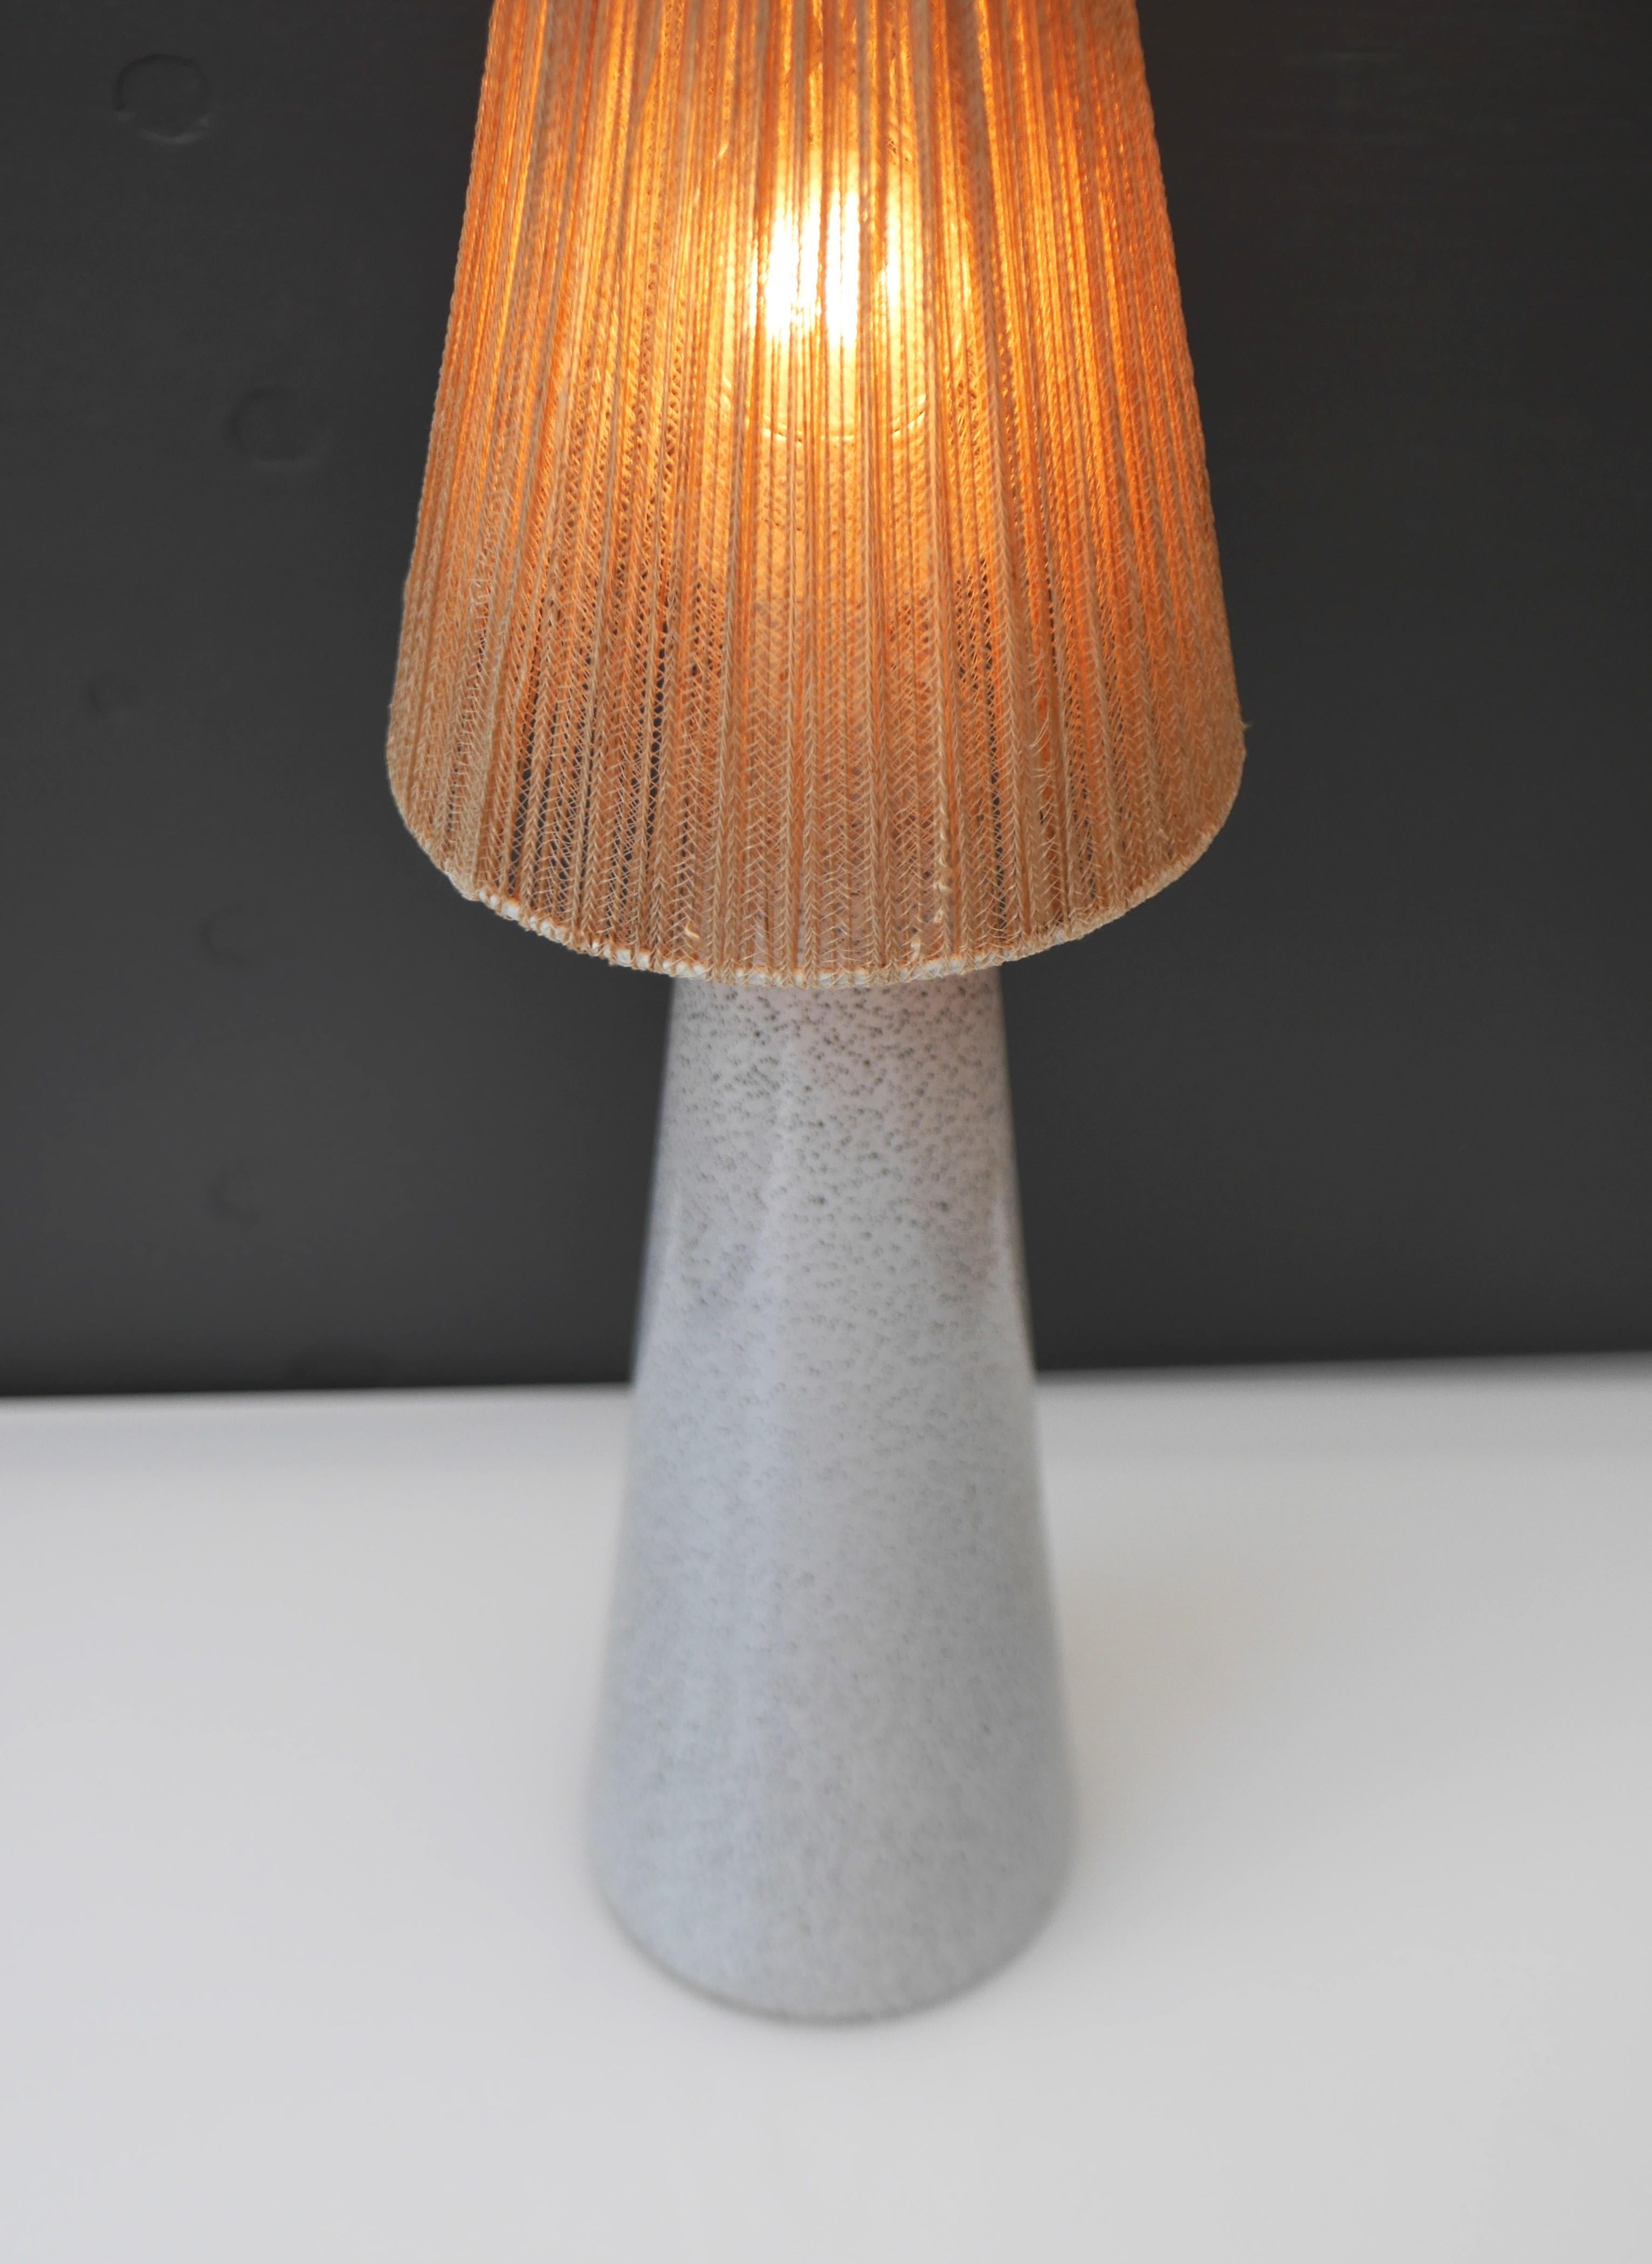 An elegant glass art table lamp made by Bengt Orup for Hyllinge Glasbruk, Sweden For Sale 3